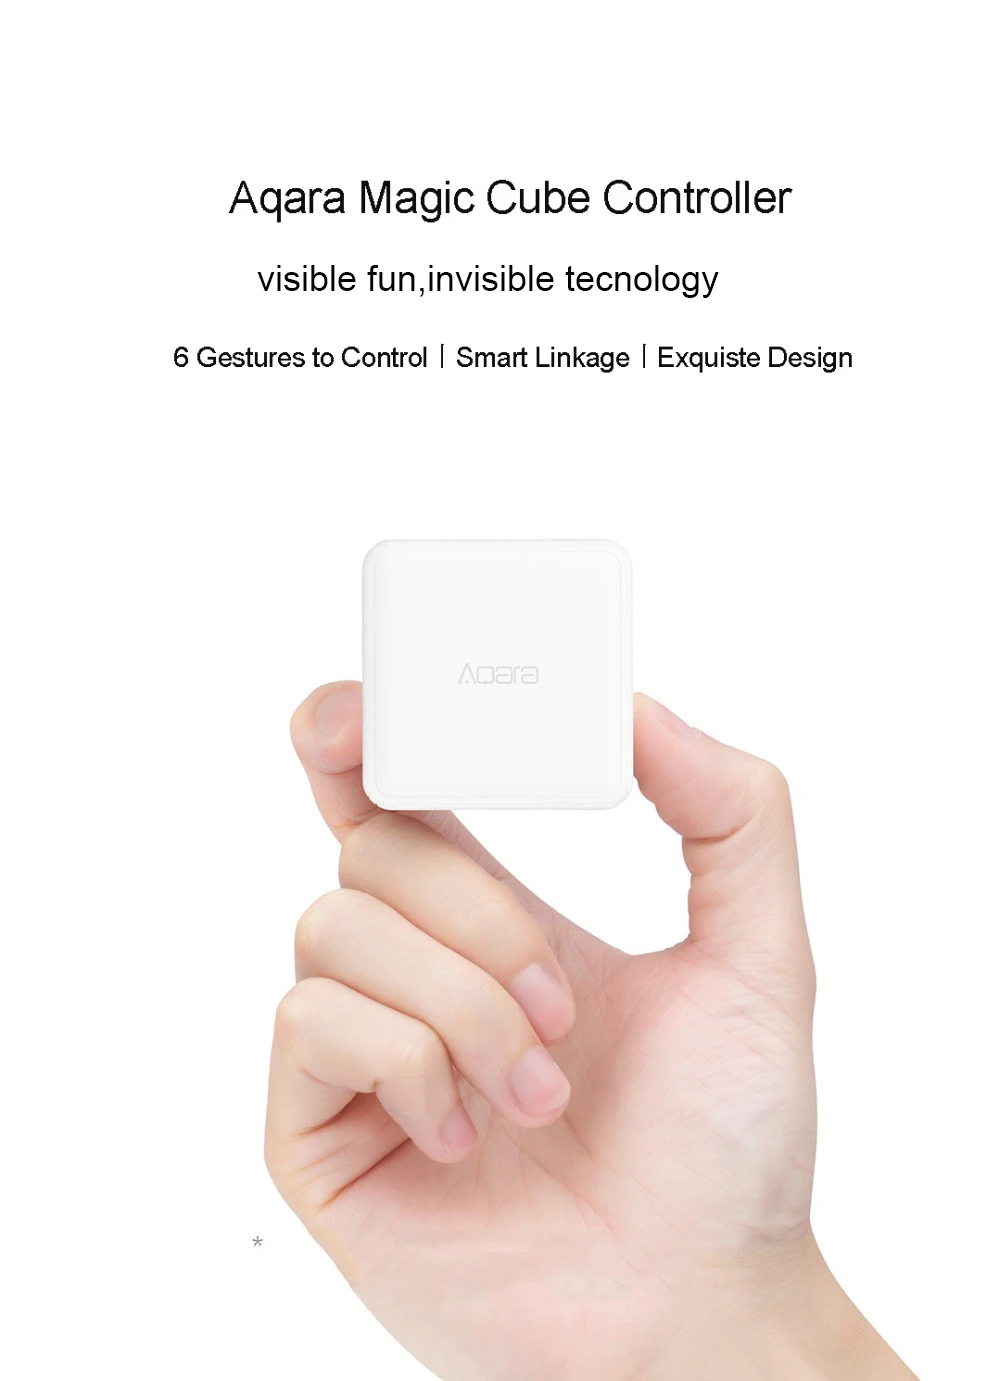 Aqara волшебный куб контроллер Zigbee версия контролируется шесть действий умный дом устройство работает для xiaomi mijia Home app